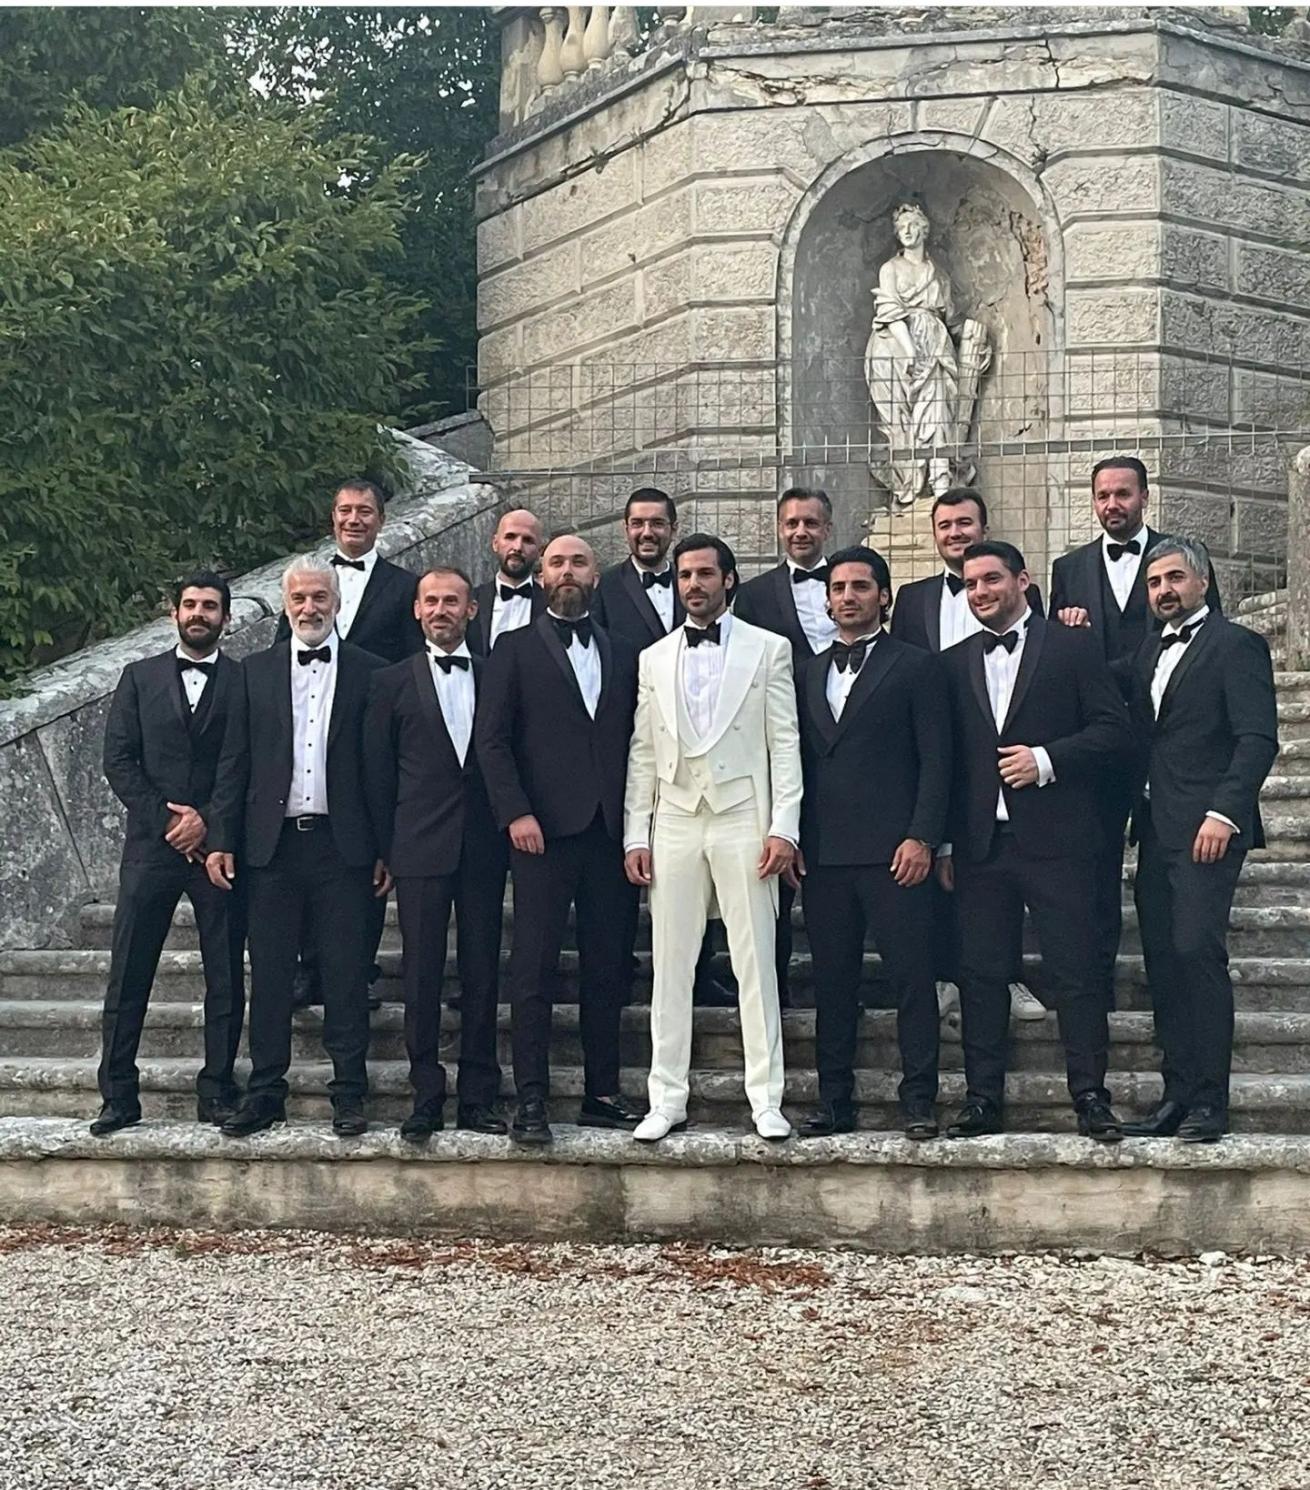 حفل زفاف أوزجي غوريل وسيركان  تشاي أوغلو في إيطاليا